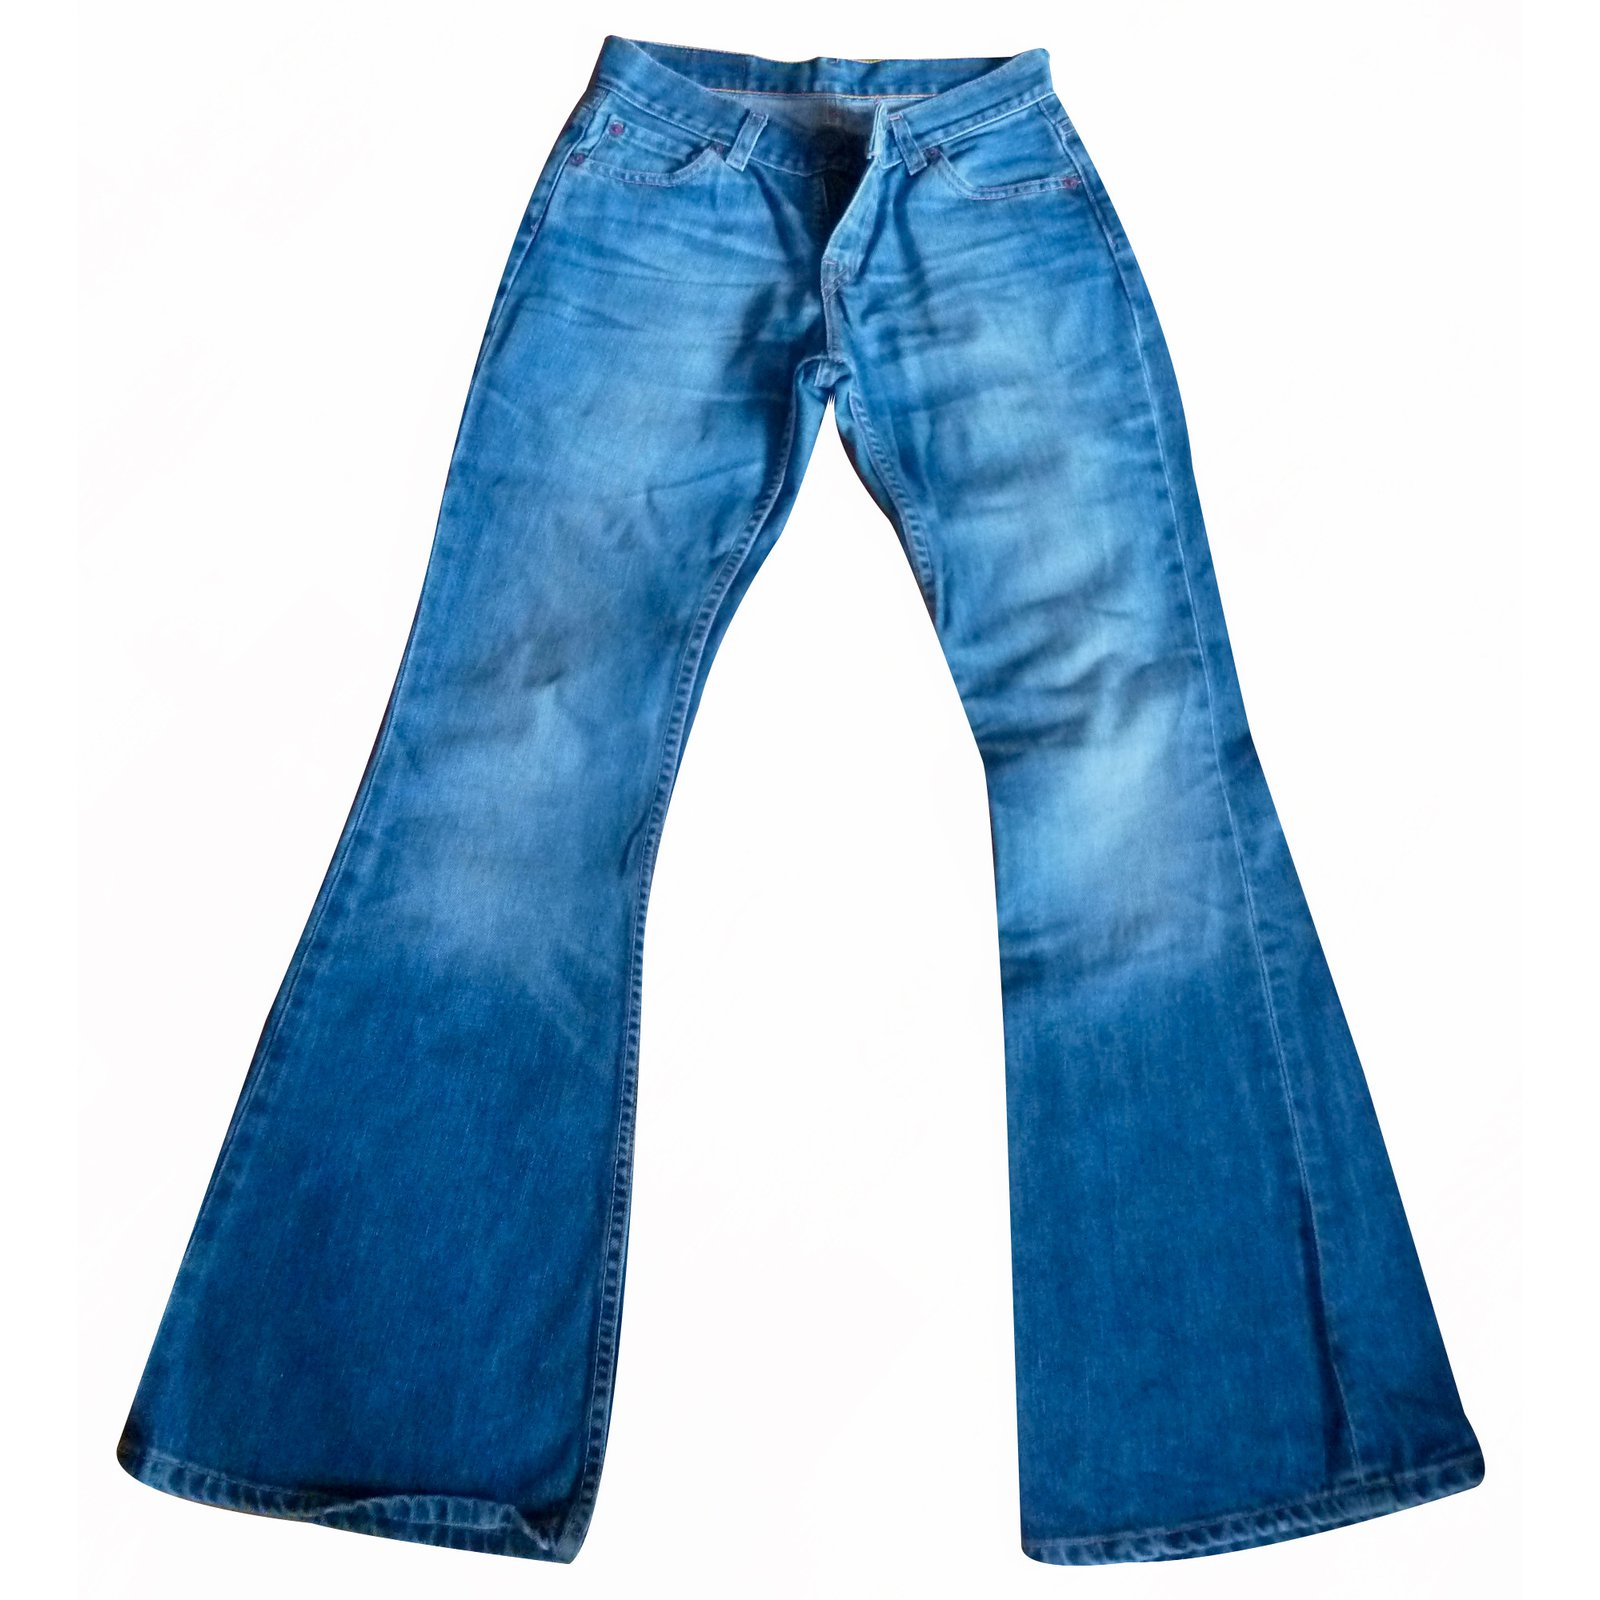 levis 544 jeans